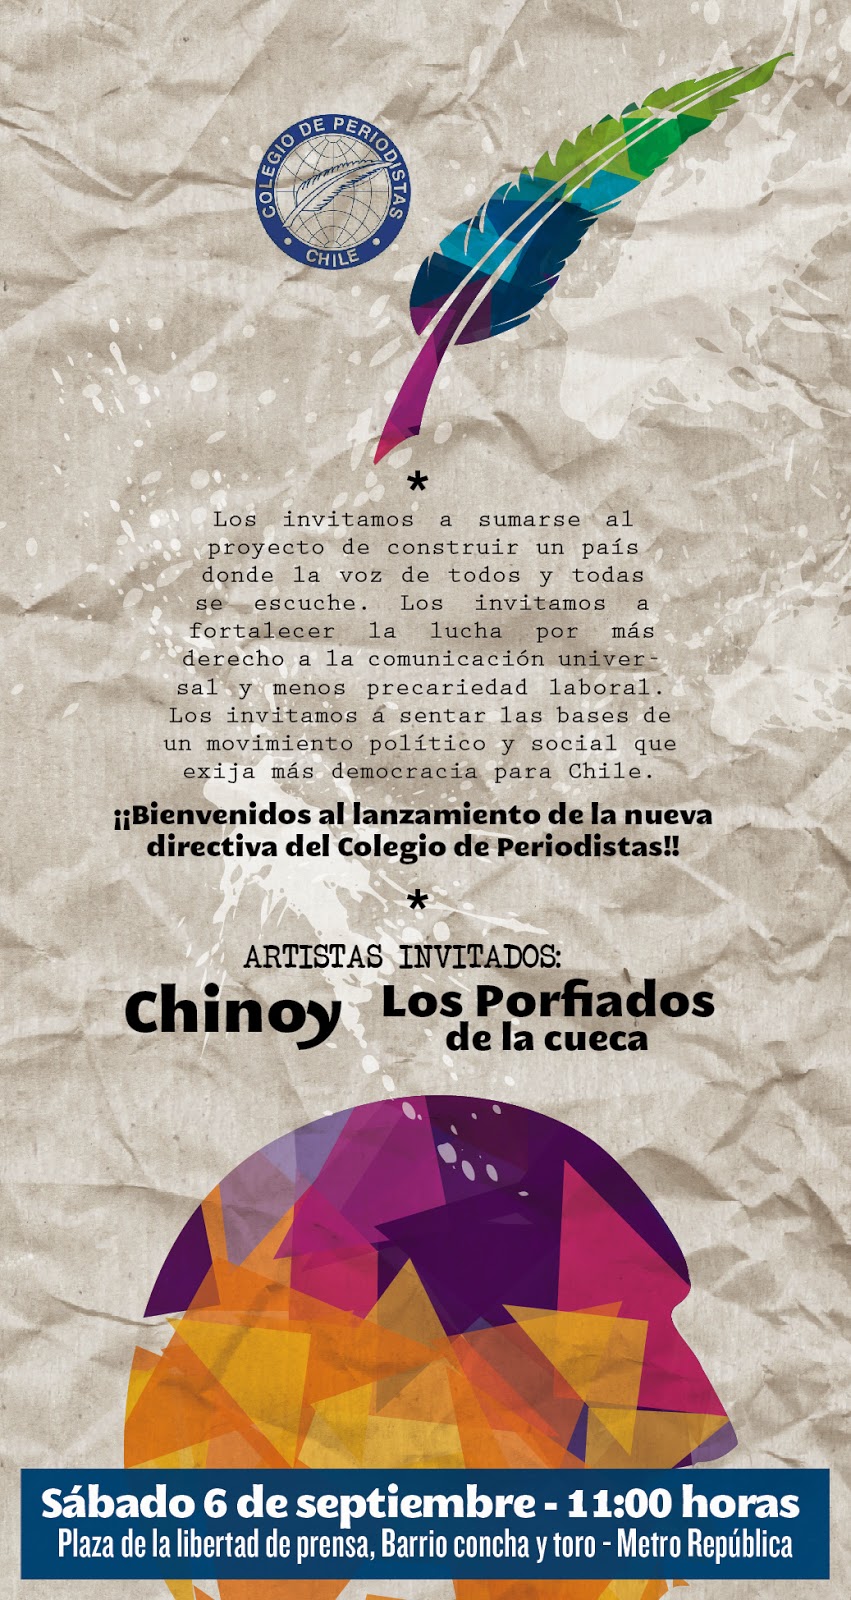 Chinoy actuará en presentación pública y ciudadana de nueva conduccióndel Colegio de Periodistas